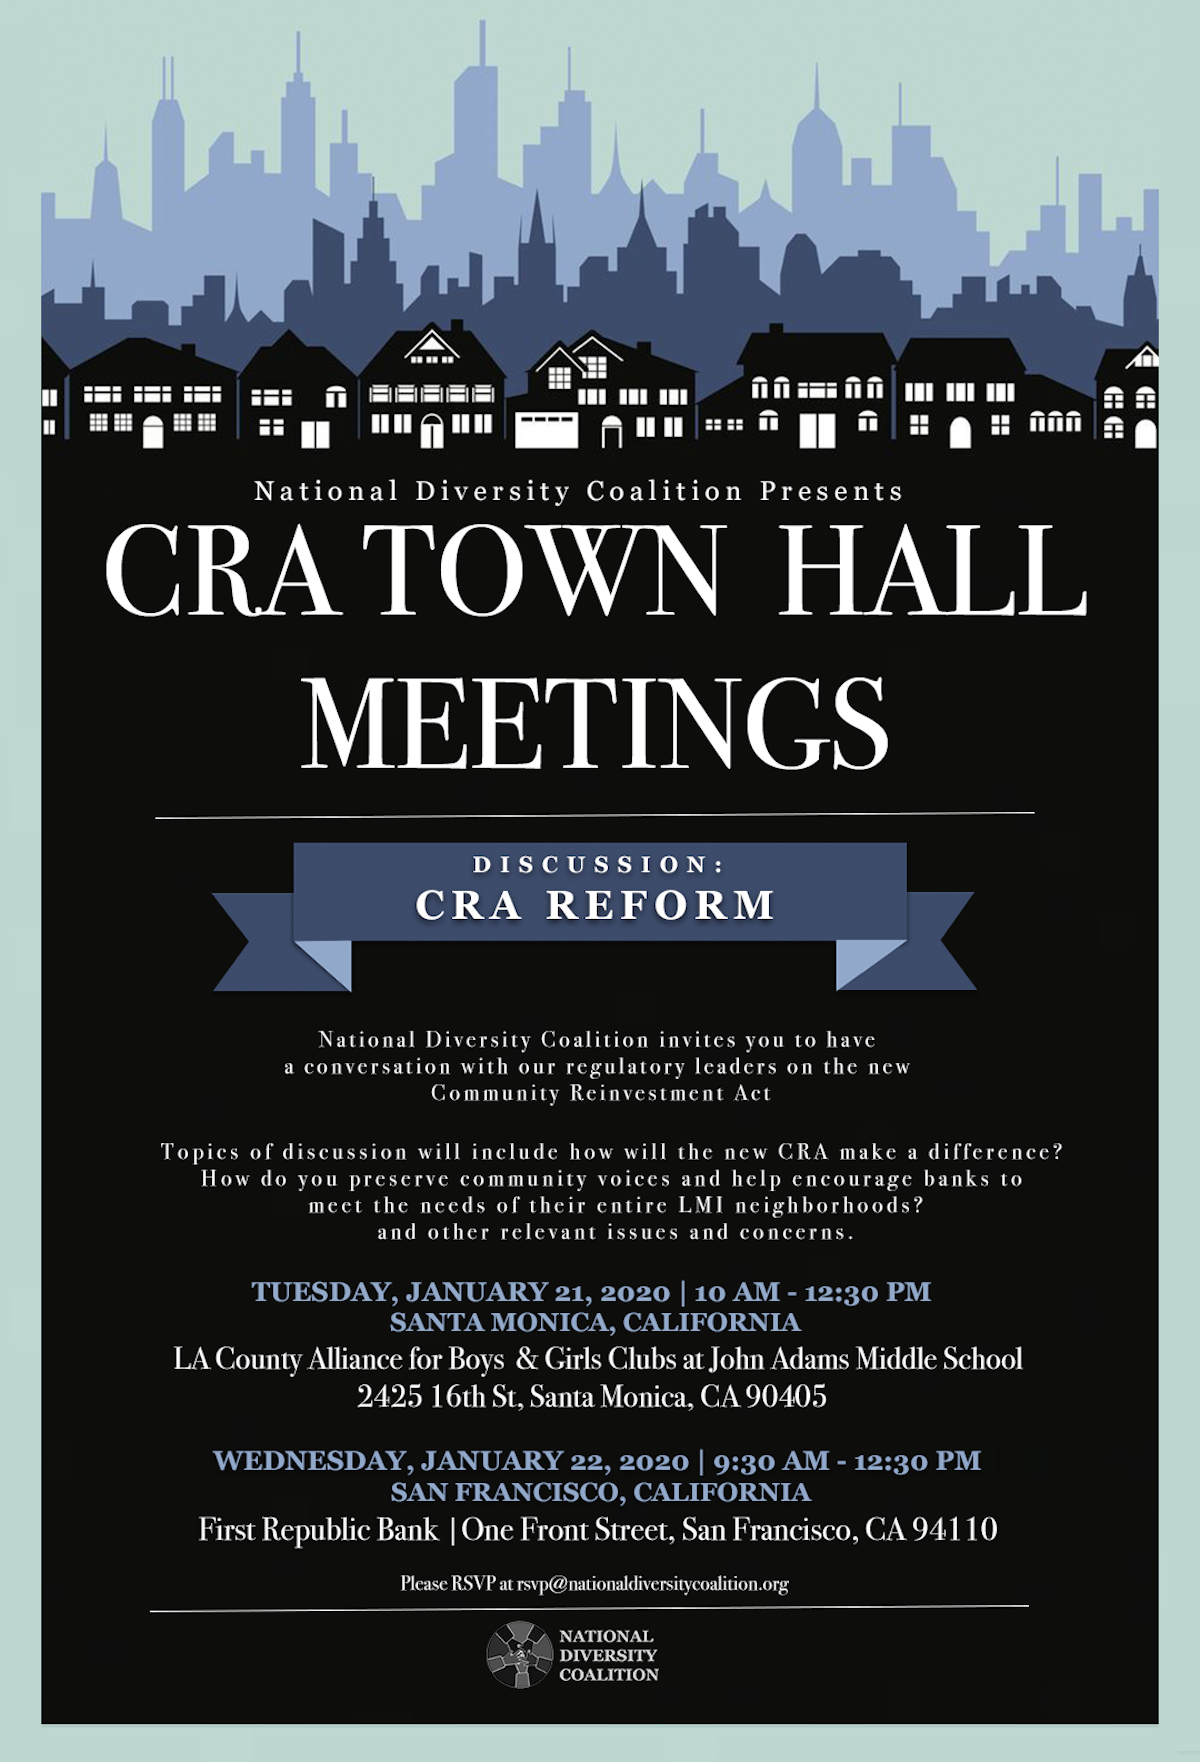 CRA Reform